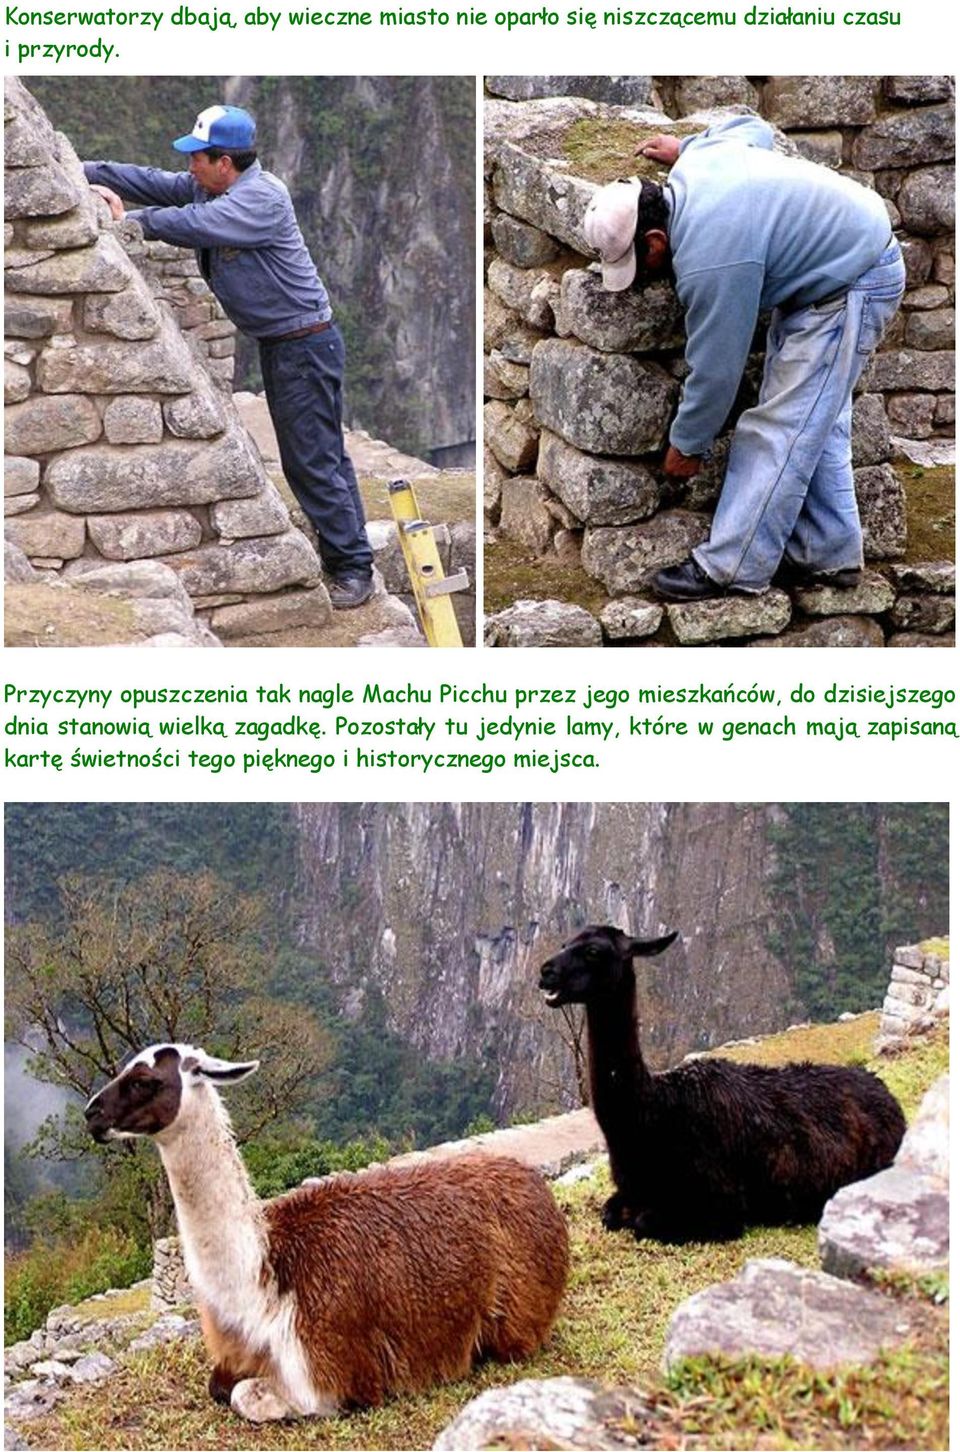 Przyczyny opuszczenia tak nagle Machu Picchu przez jego mieszkańców, do